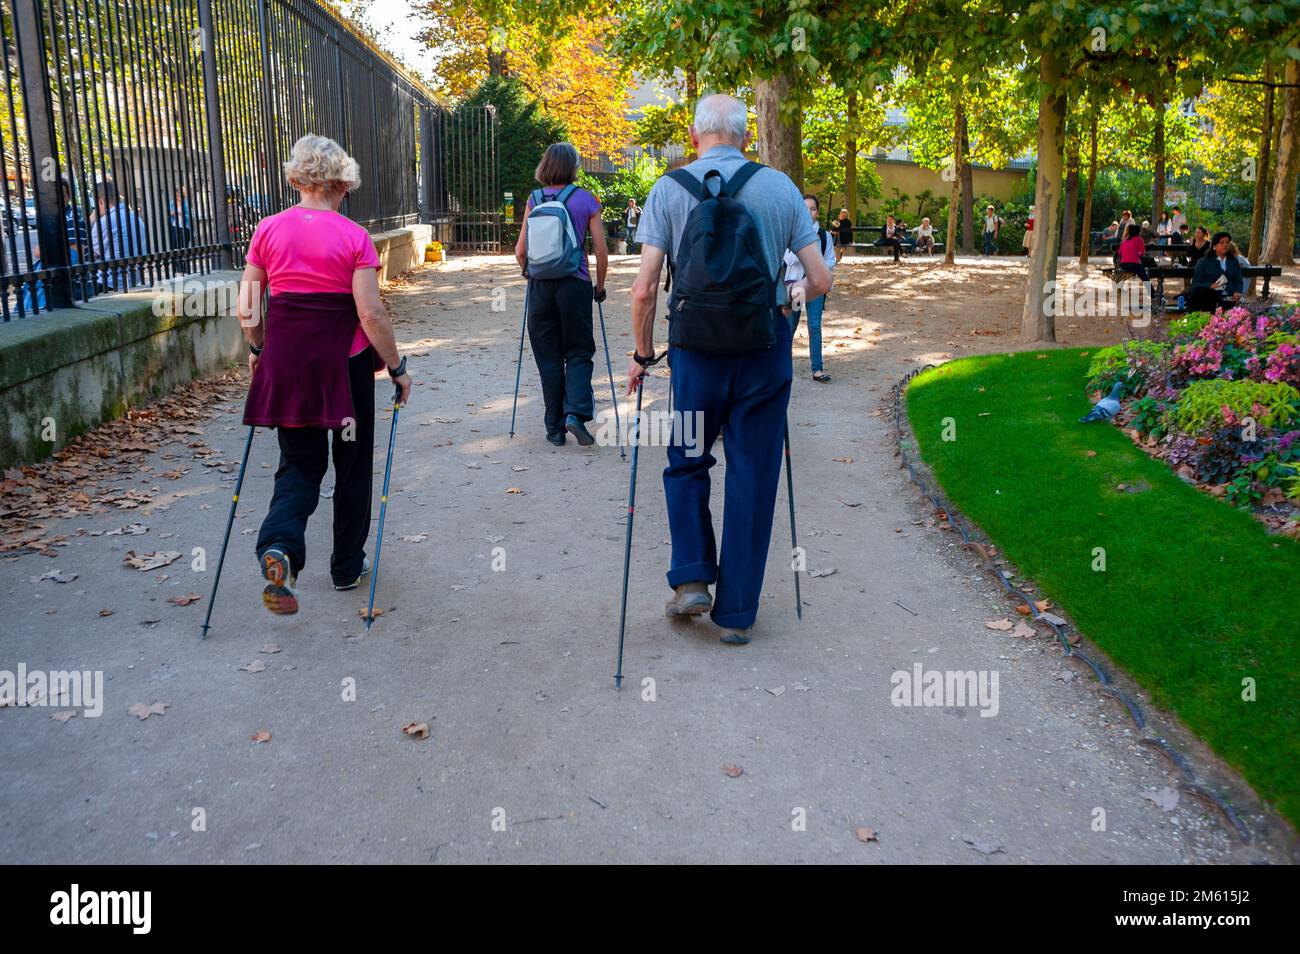 Paris, France - Français Senior adultes Nordic Walking Away, avec des cannes, dans les jardins du Luxembourg, vue arrière d'un petit groupe de personnes âgées Banque D'Images